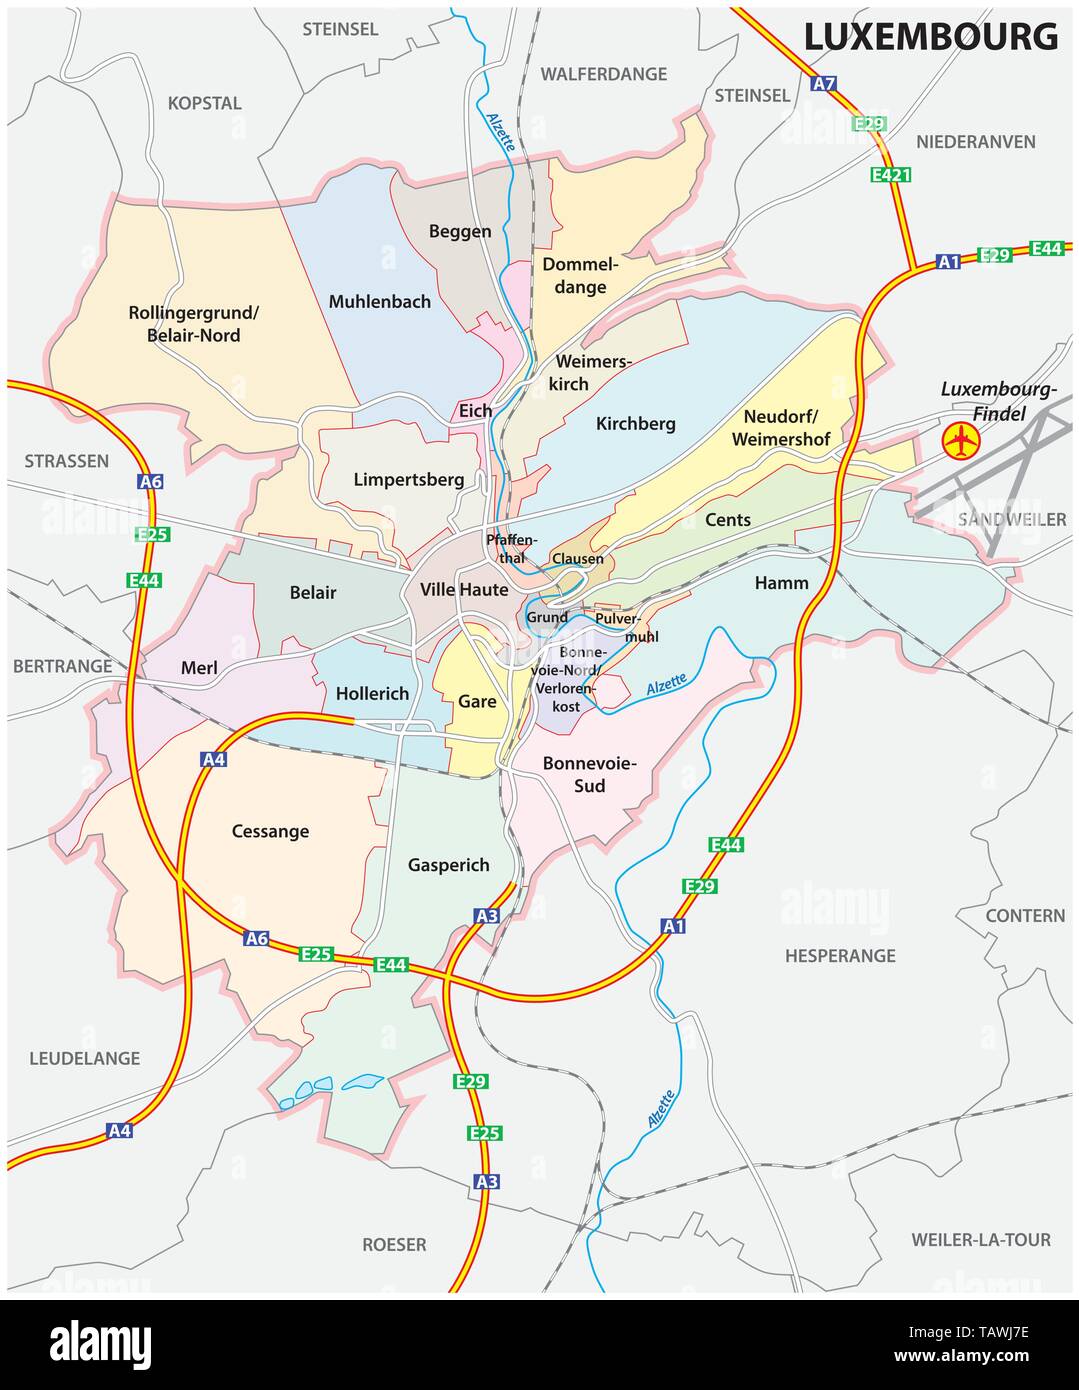 Amministrativo e mappa delle strade della città di Lussemburgo Illustrazione Vettoriale